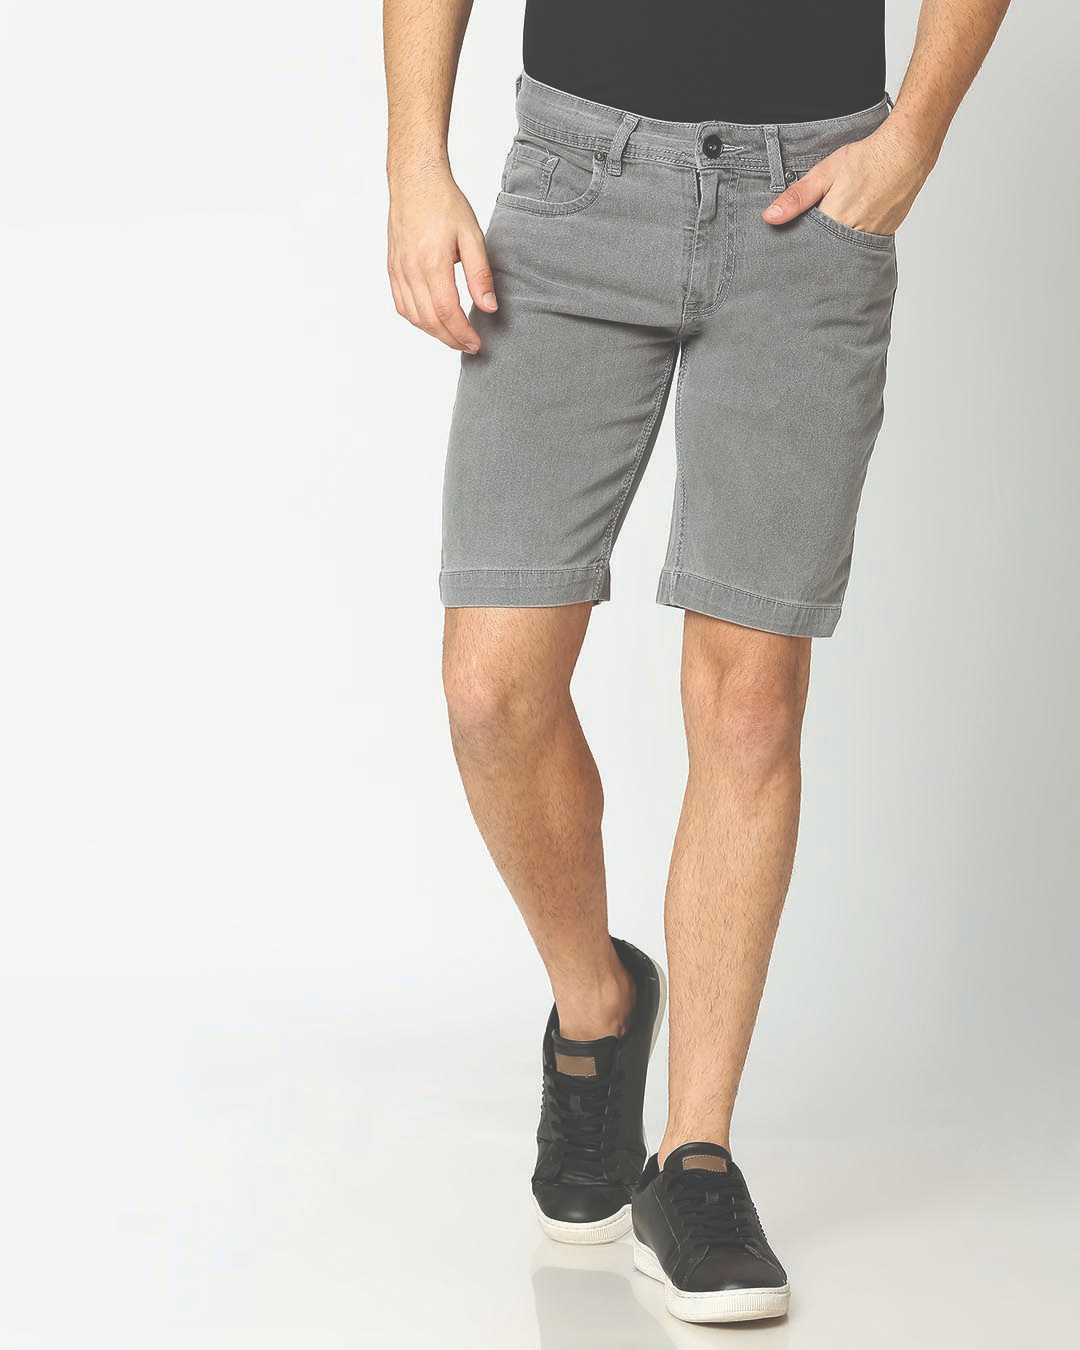 Buy Men's Grey Slim Fit Denim Shorts for Men Grey Online at Bewakoof